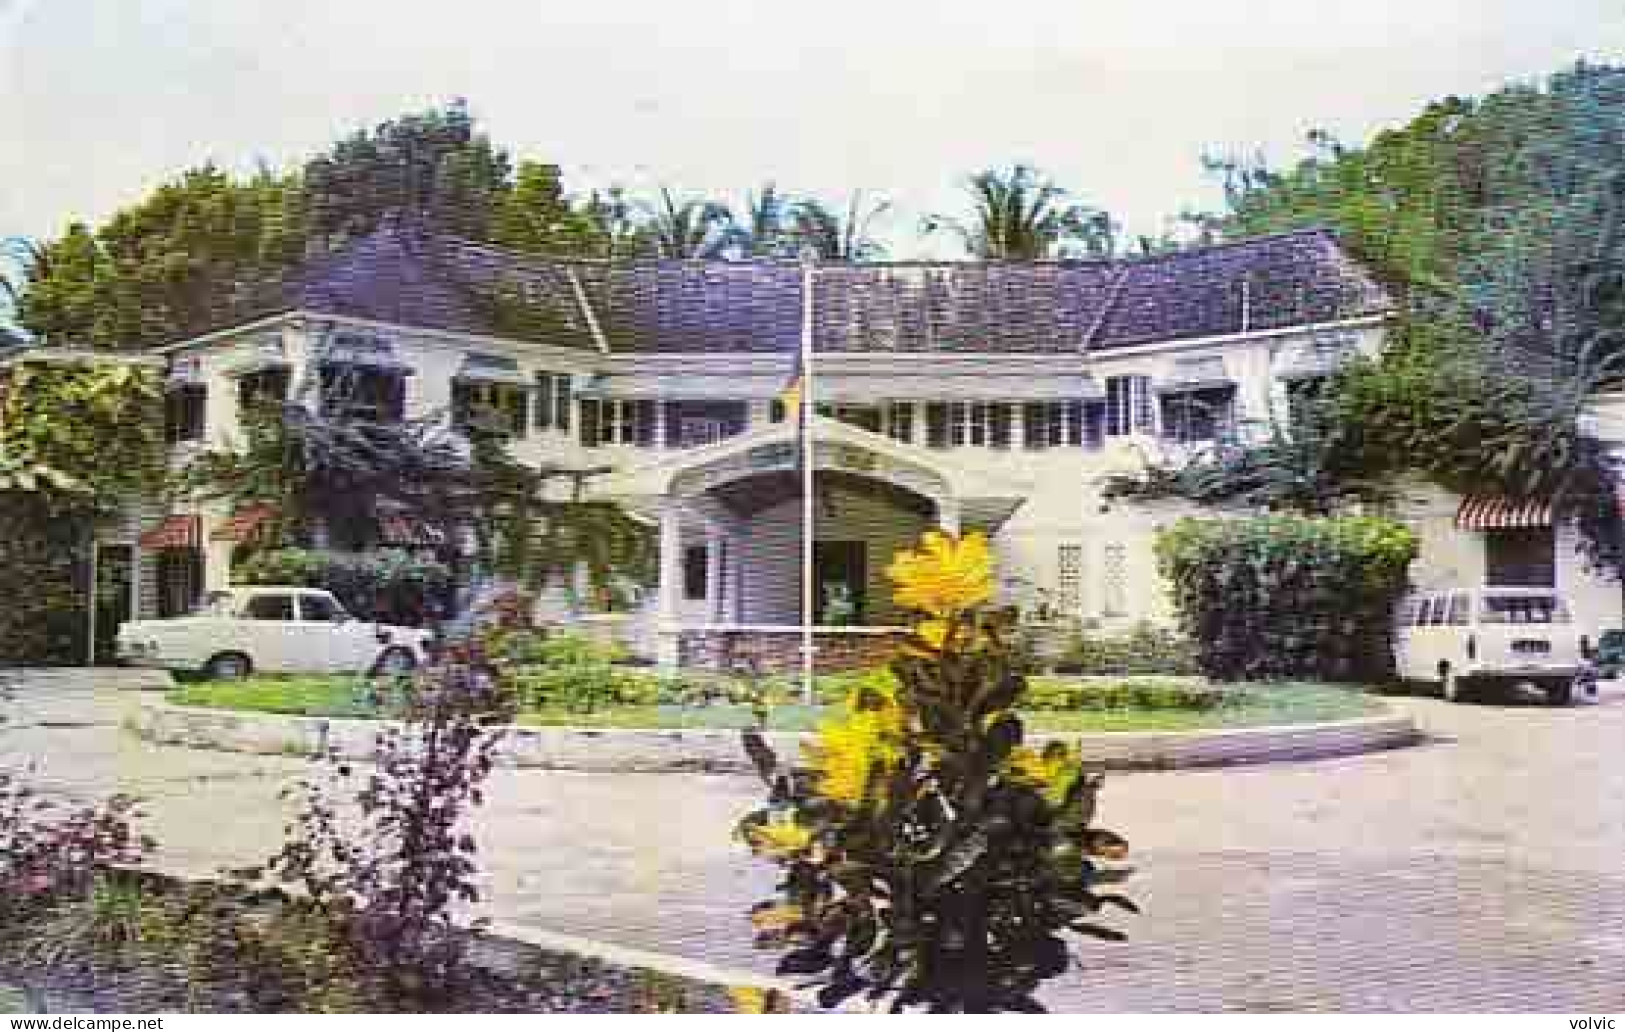 AMERIQUE - Antilles - BARBADES - Colony Club - Bridgetown - Barbados